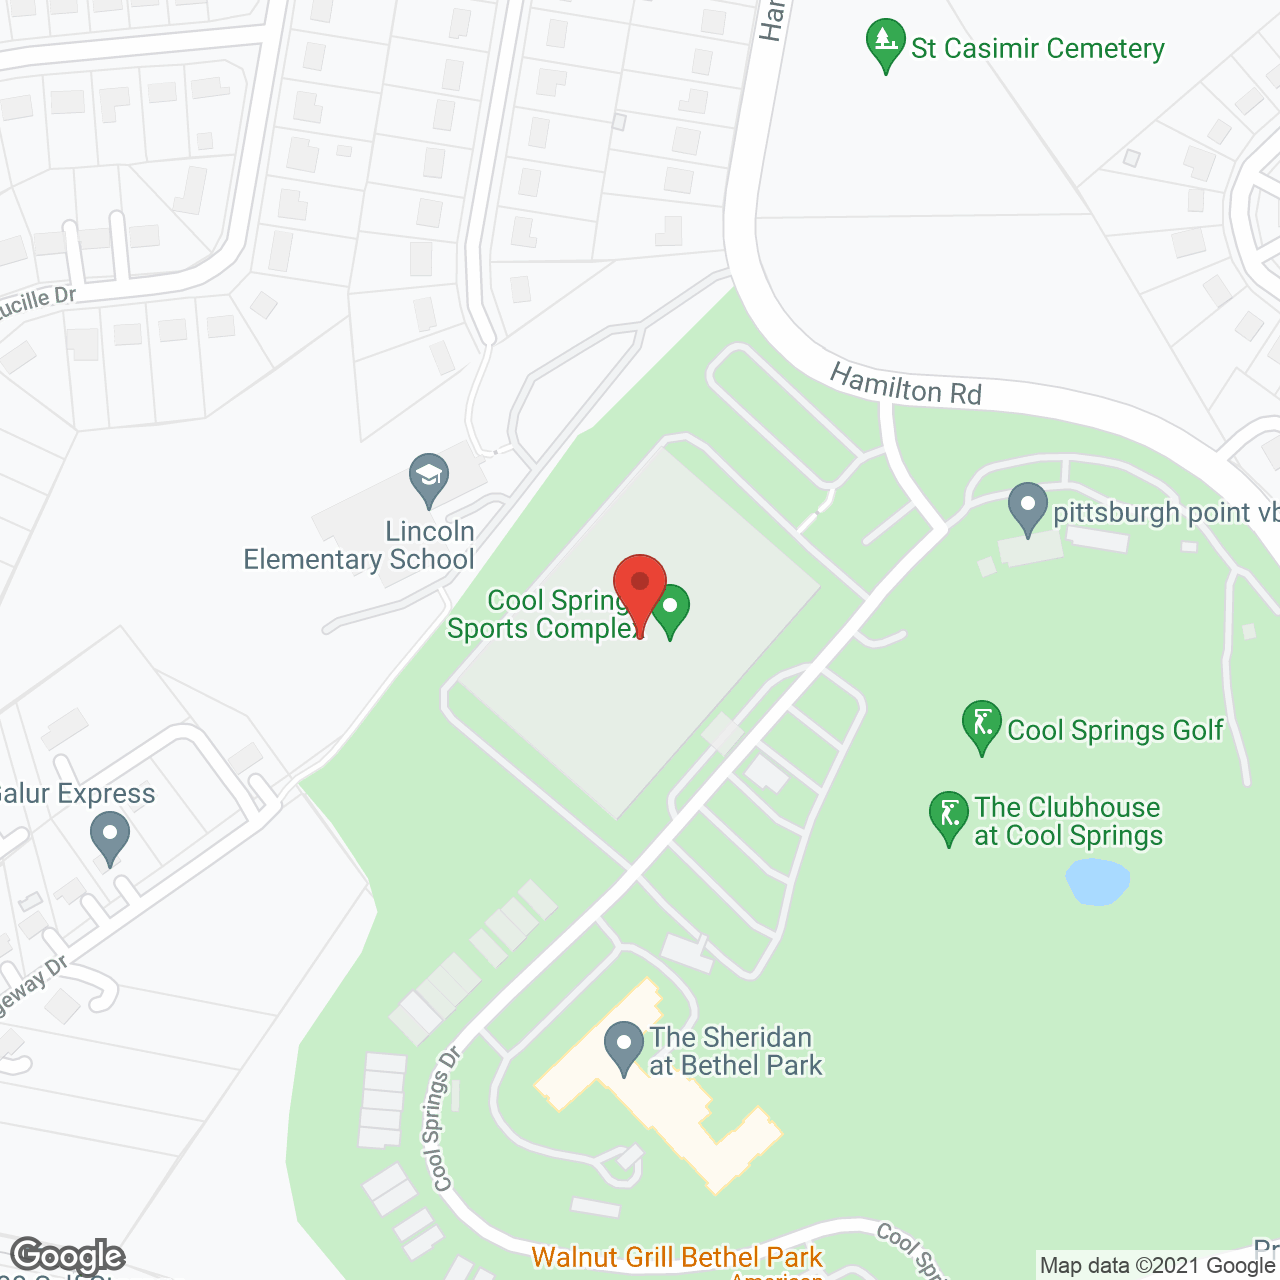 The Sheridan at Bethel Park in google map